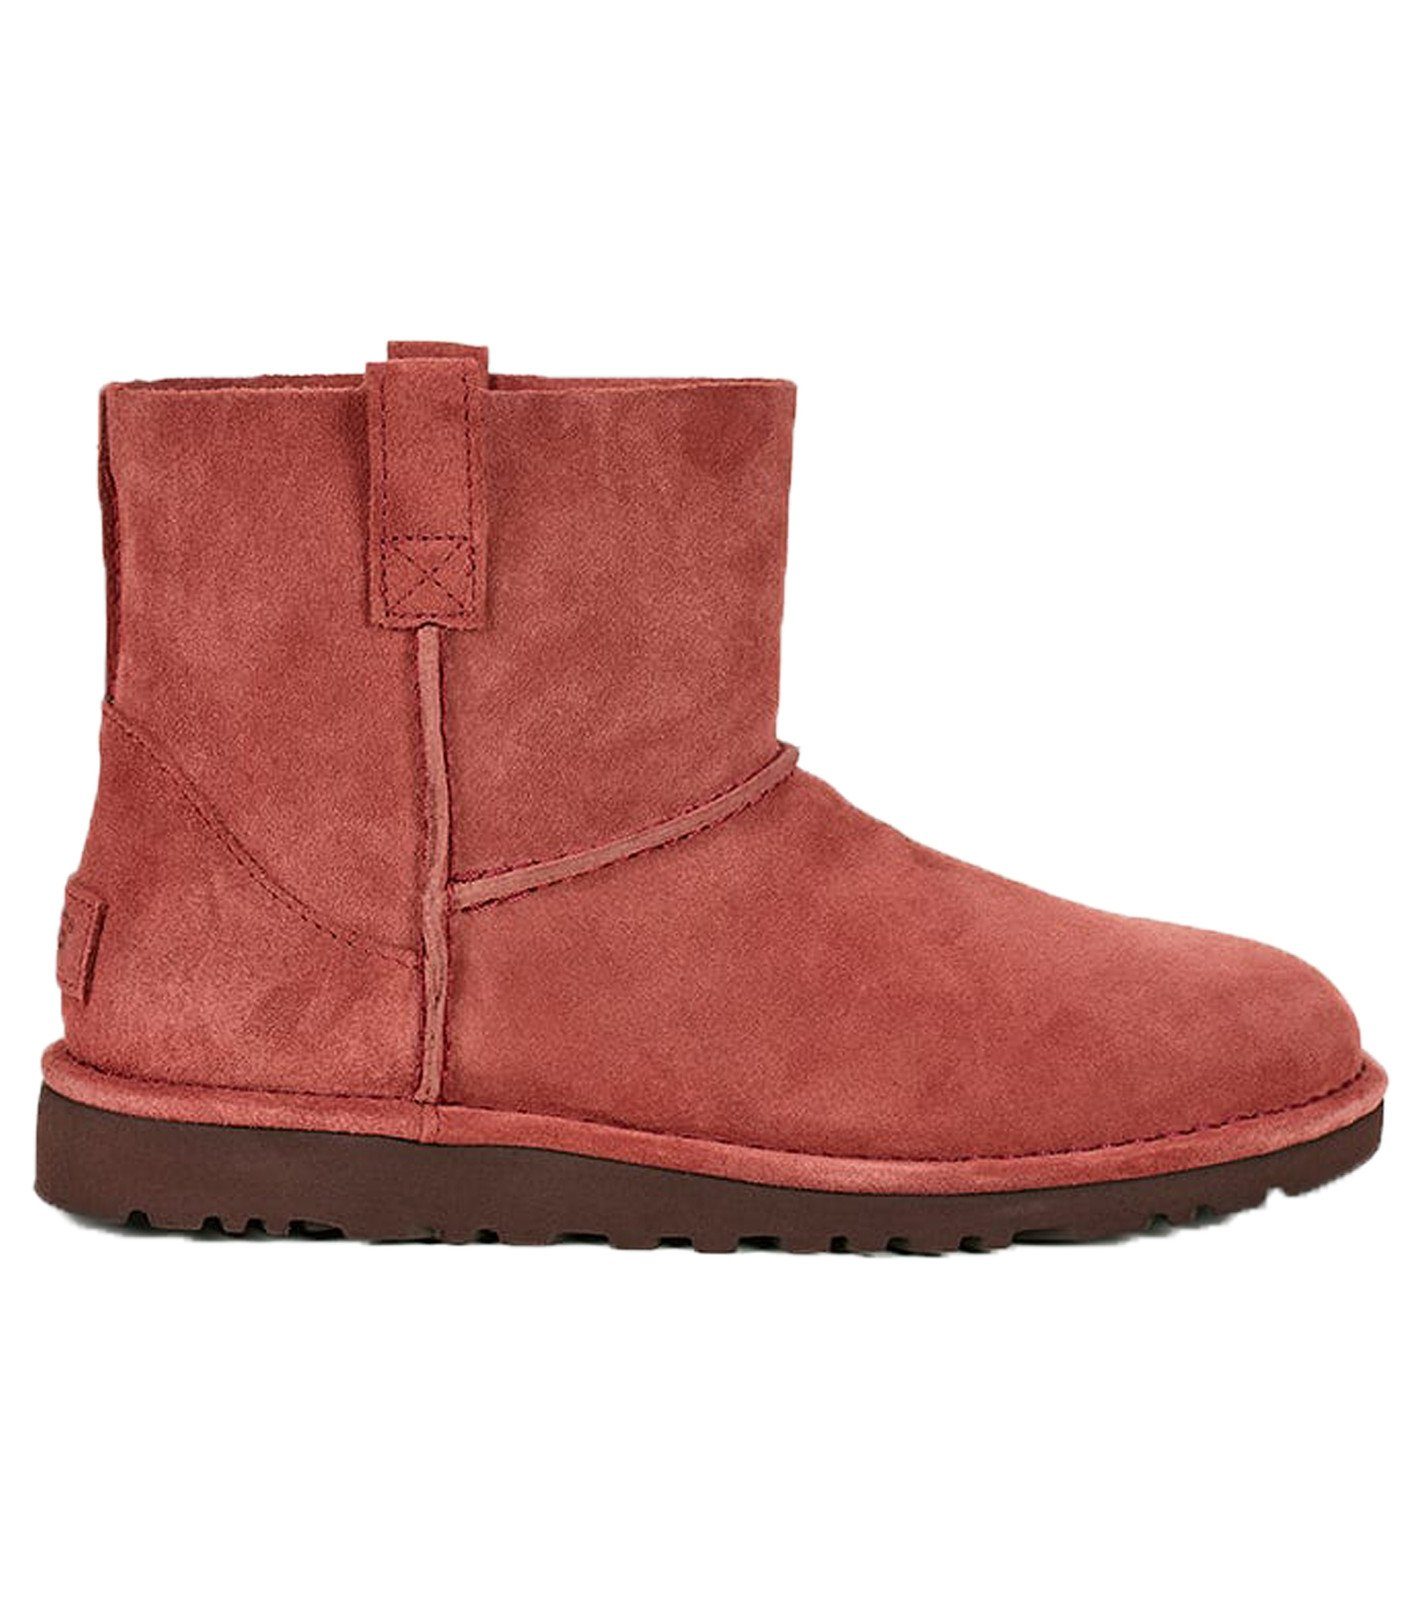 UGG UGG Australia Echtleder-Boots ungefütterte Damen Low Stiefel Freizeit- Boots Rot Stiefel